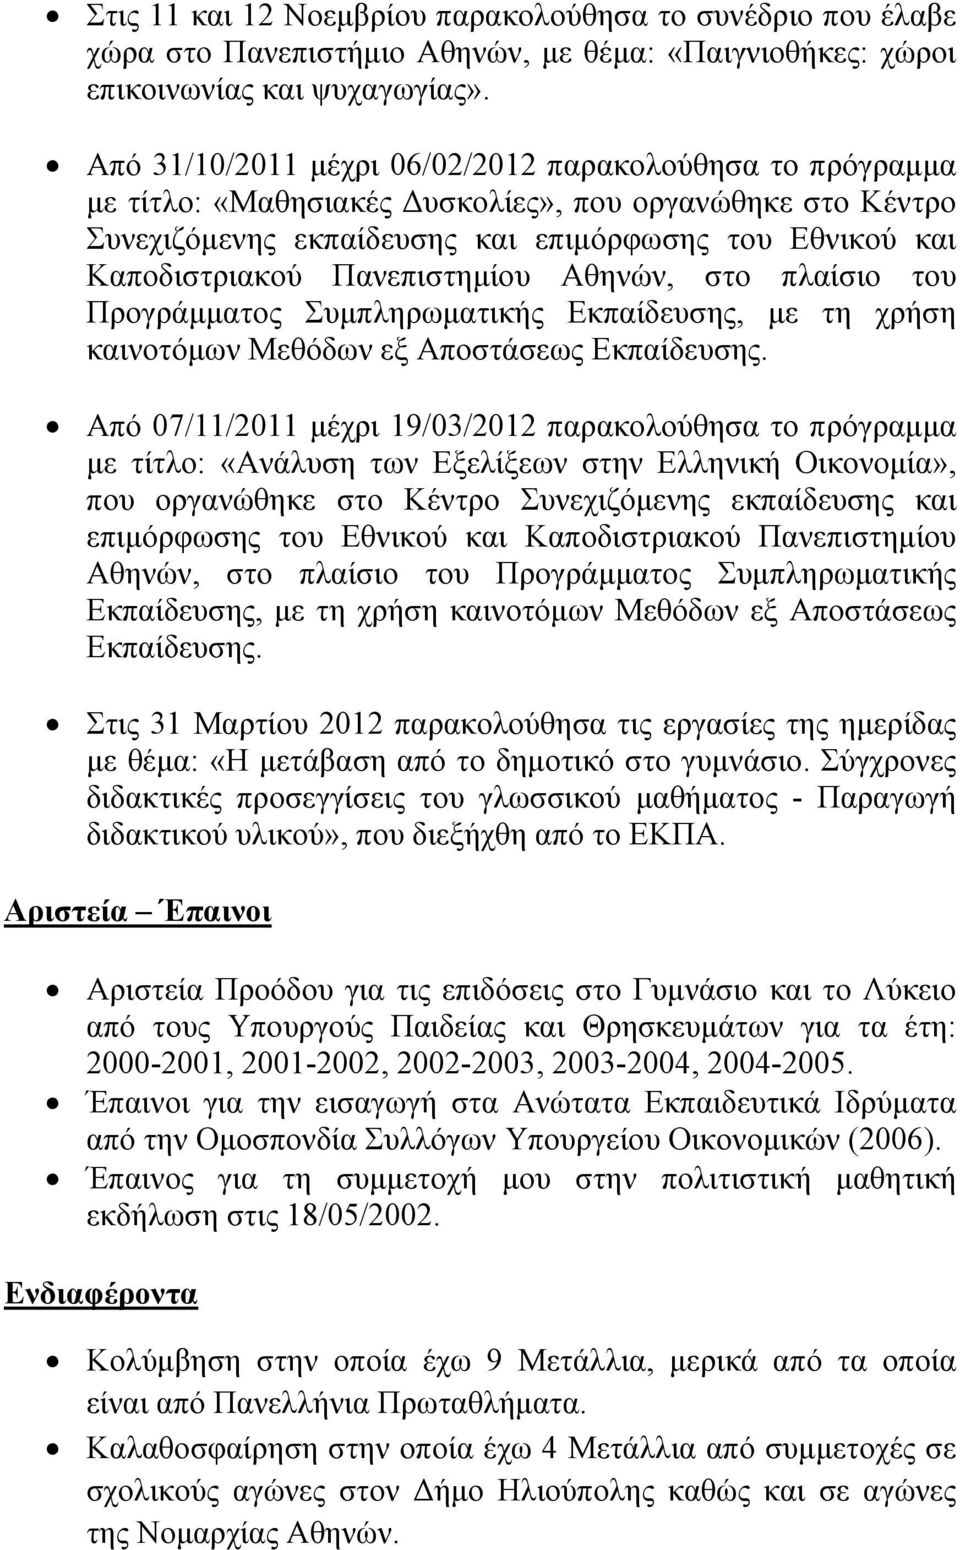 Πανεπιστημίου Αθηνών, στο πλαίσιο του Προγράμματος Συμπληρωματικής Εκπαίδευσης, με τη χρήση καινοτόμων Μεθόδων εξ Αποστάσεως Εκπαίδευσης.